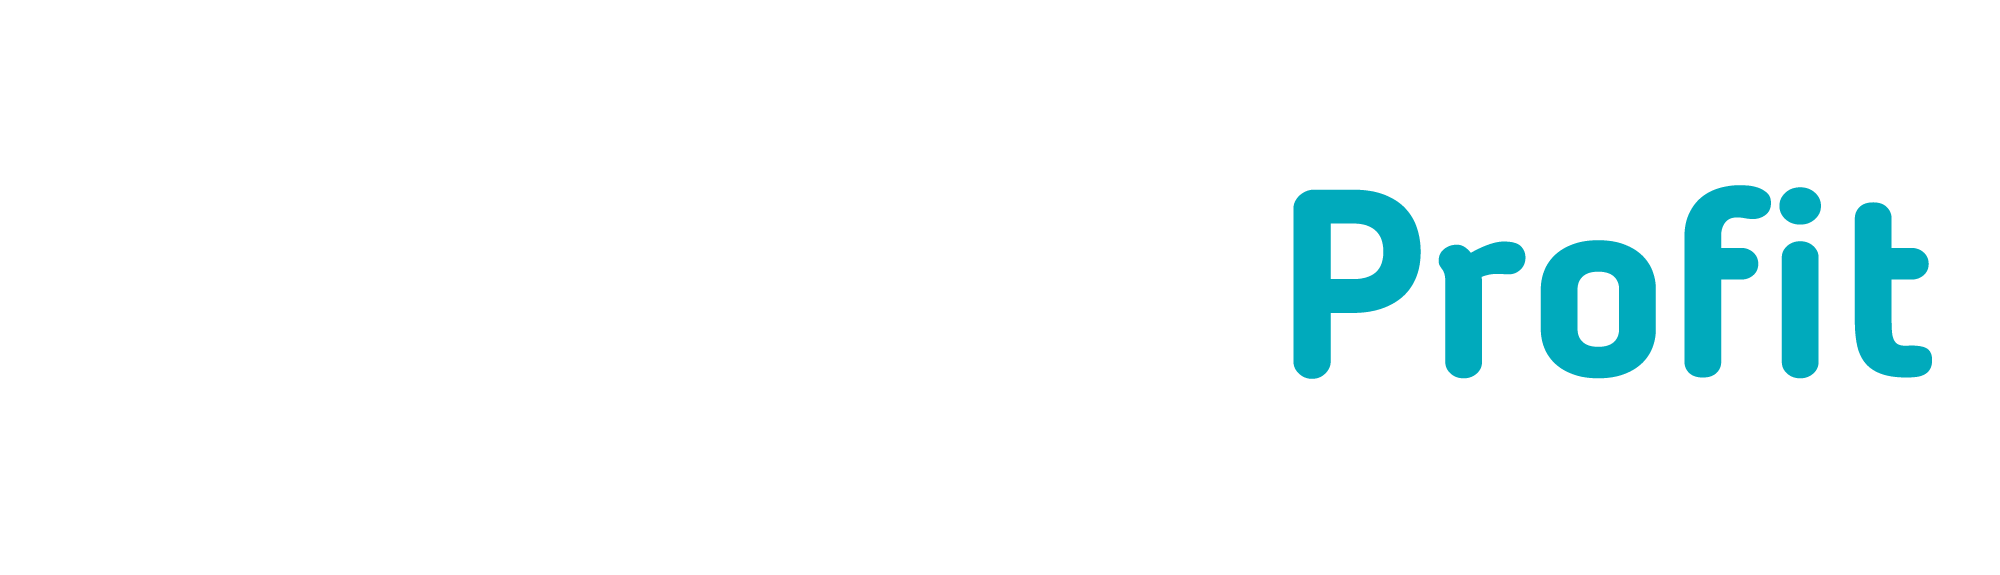 rocket profit logo new